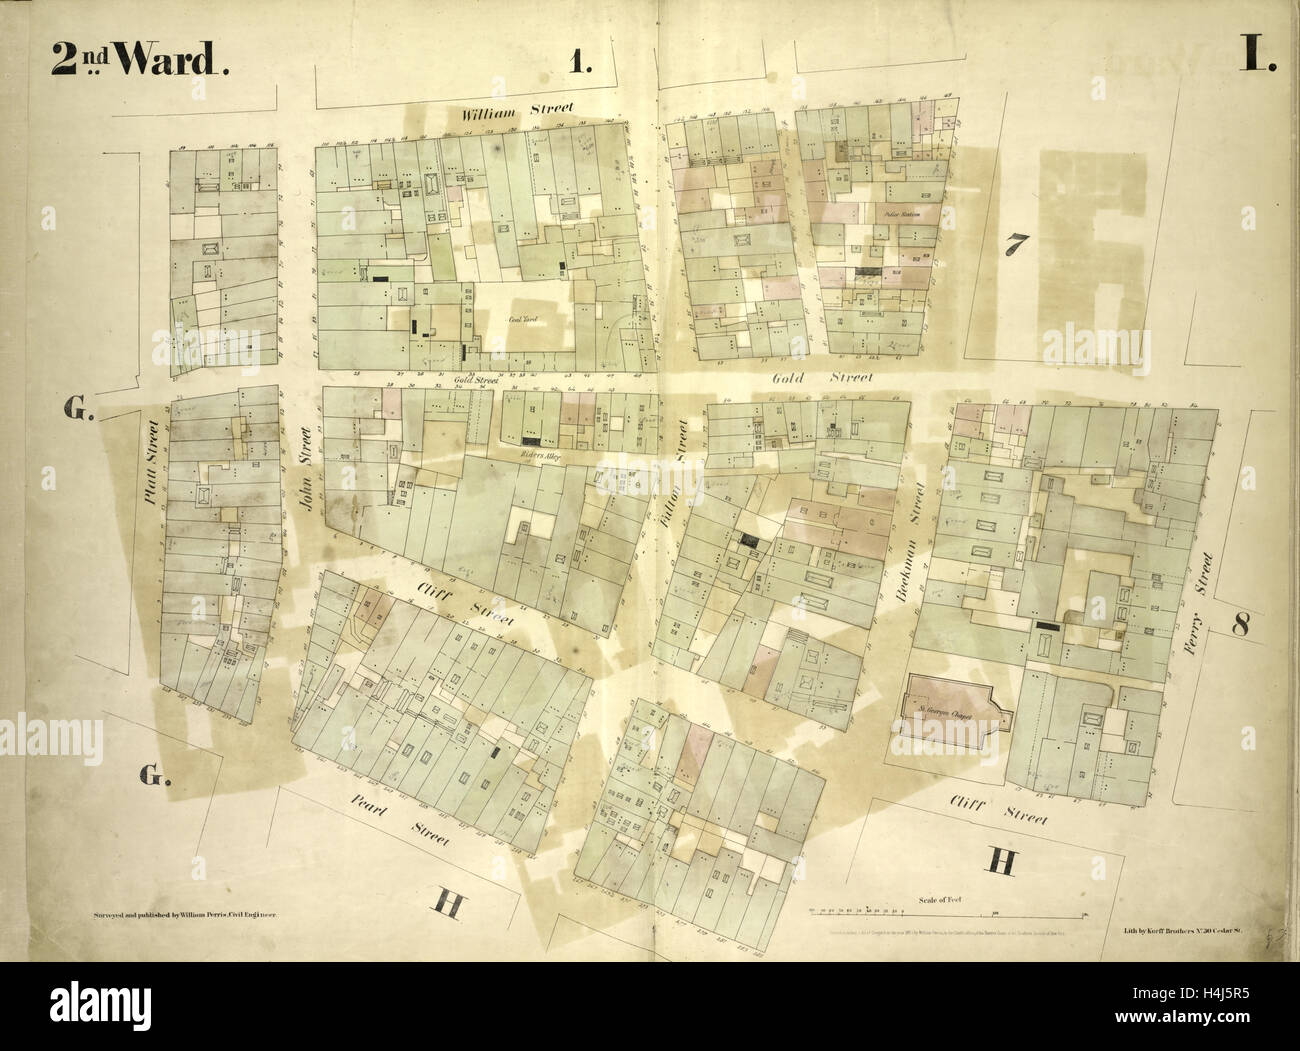 Secondo Ward. Piastra: ho mappa delimitata da William Street, Beekman Street, Gold Street, Ferry Street, Cliff Street, Pearl Street Foto Stock